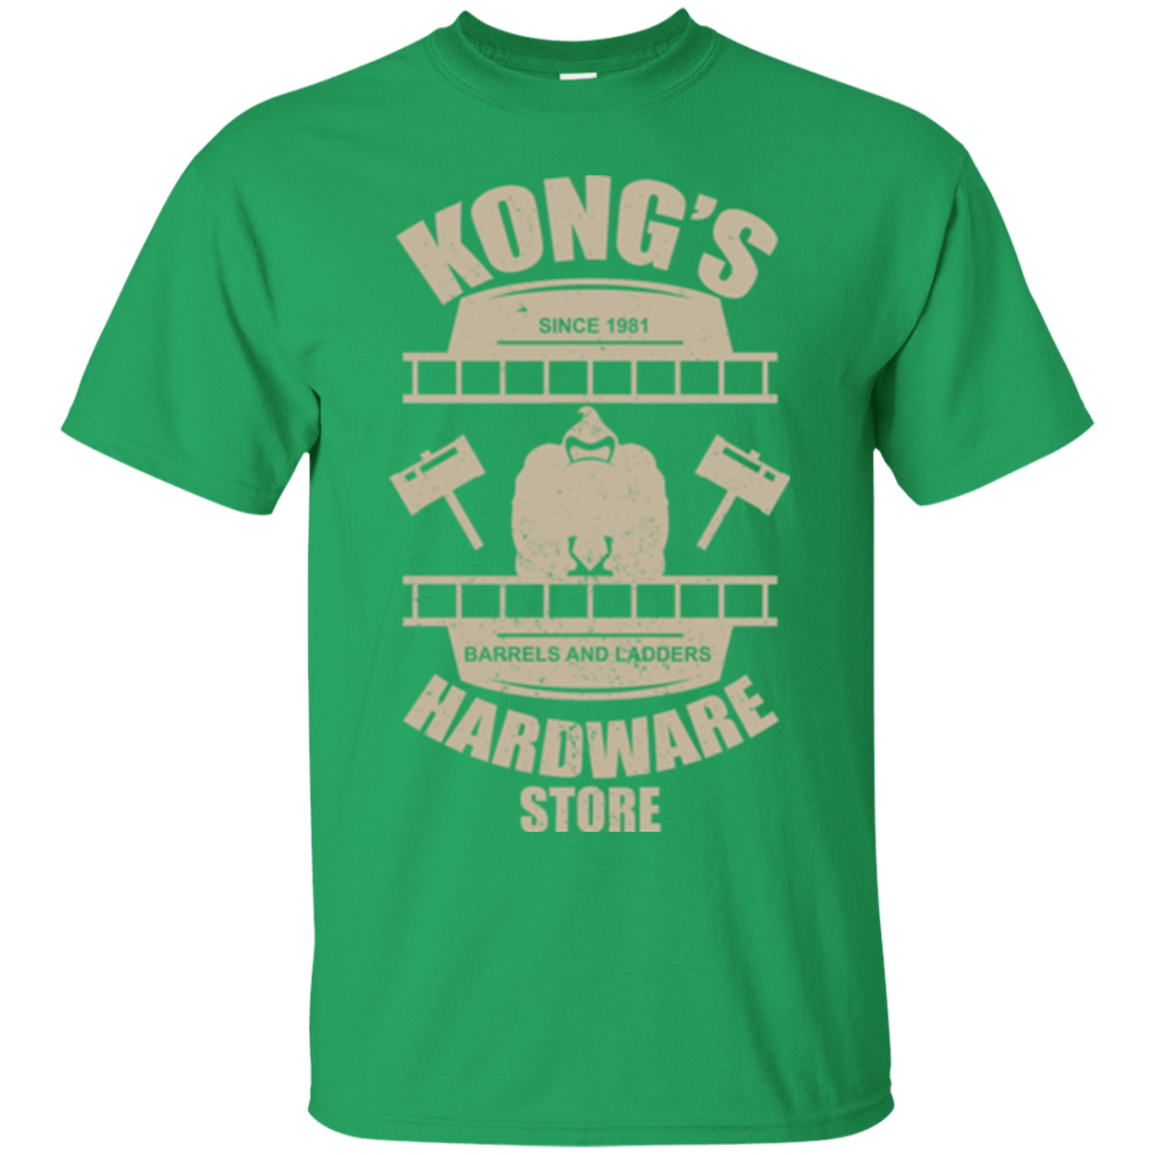 T-Shirts Irish Green / Small Kongs Hardware Store T-Shirt